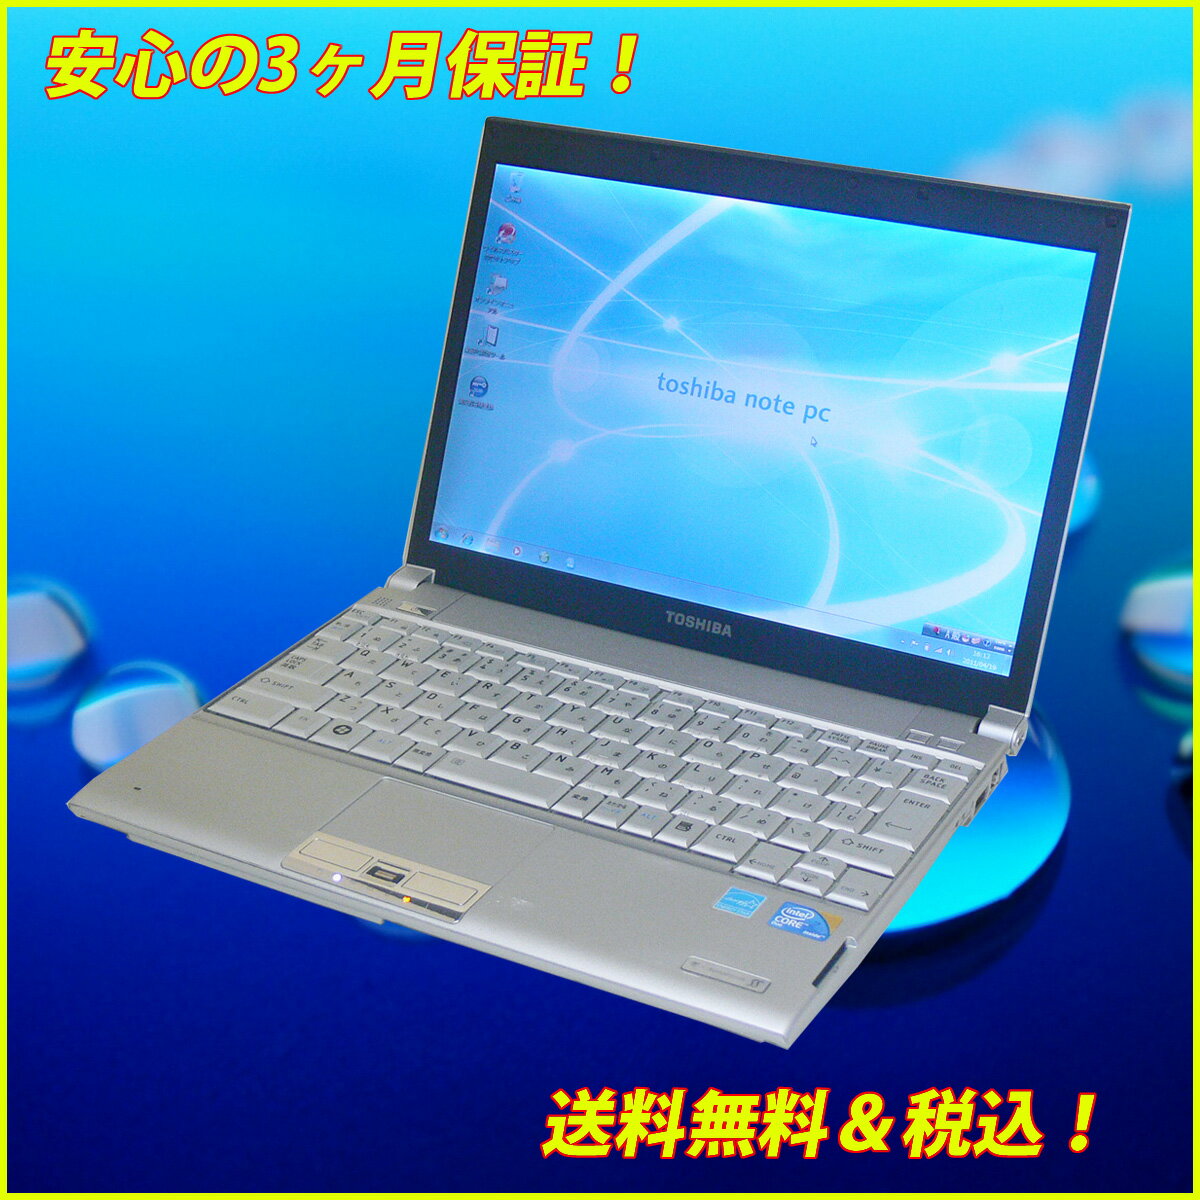 【無線LAN内蔵 B5モバイル】【中古パソコン】Toshiba dynabook SS RX2 SG120E/2WWindowsXP セットアップ済みKingSoft Office2010インストール済み【中古】【中古パソコン】